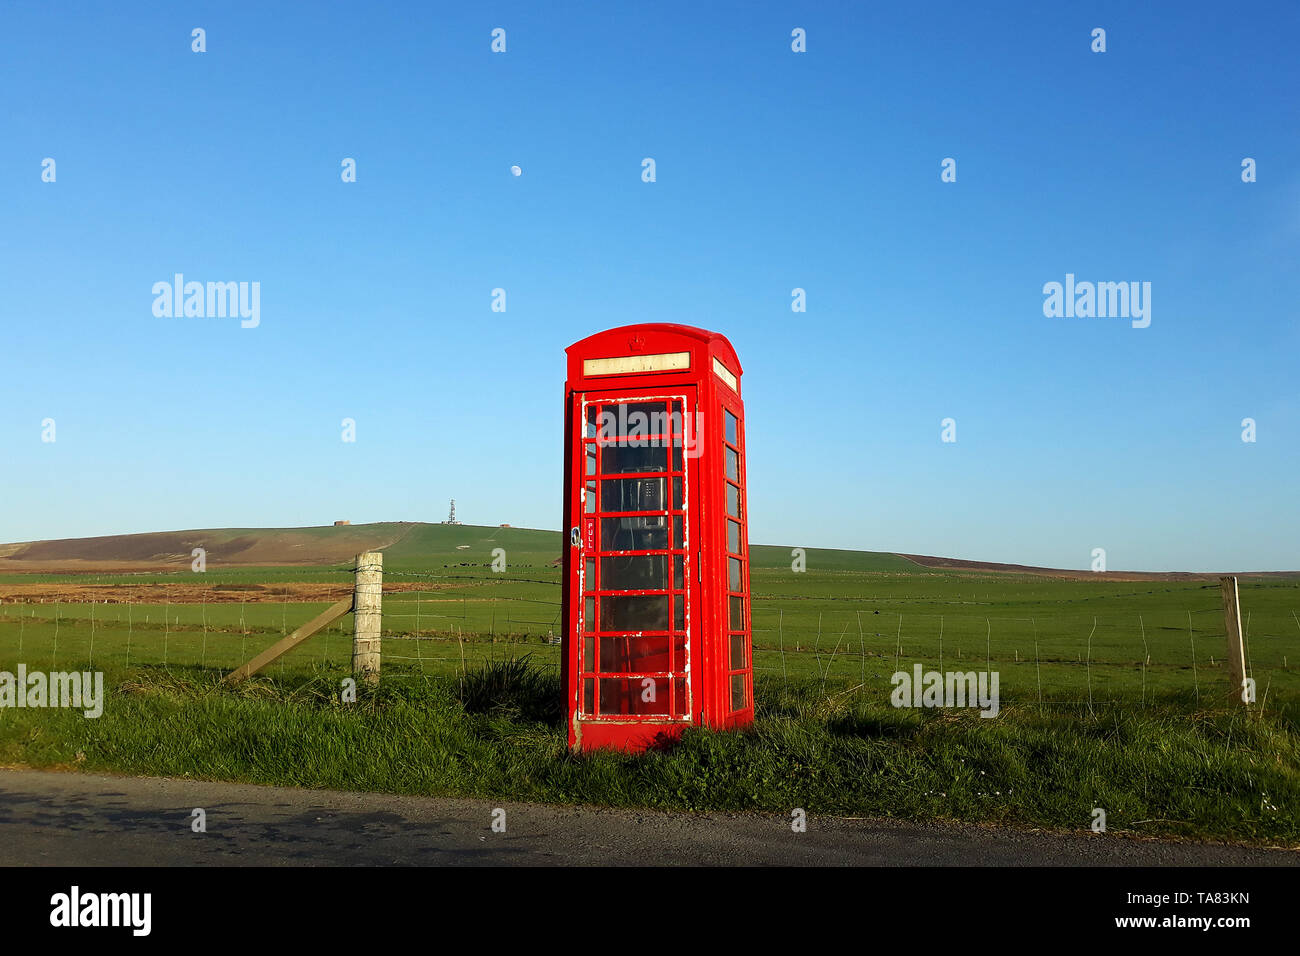 Orkney Inseln, Festland, rote Telefonzellen in der Mitte von Nirgendwo Schottland 8. Mai - 19. Reise über Schottland Foto Samantha Zucchi Insidefoto Stockfoto